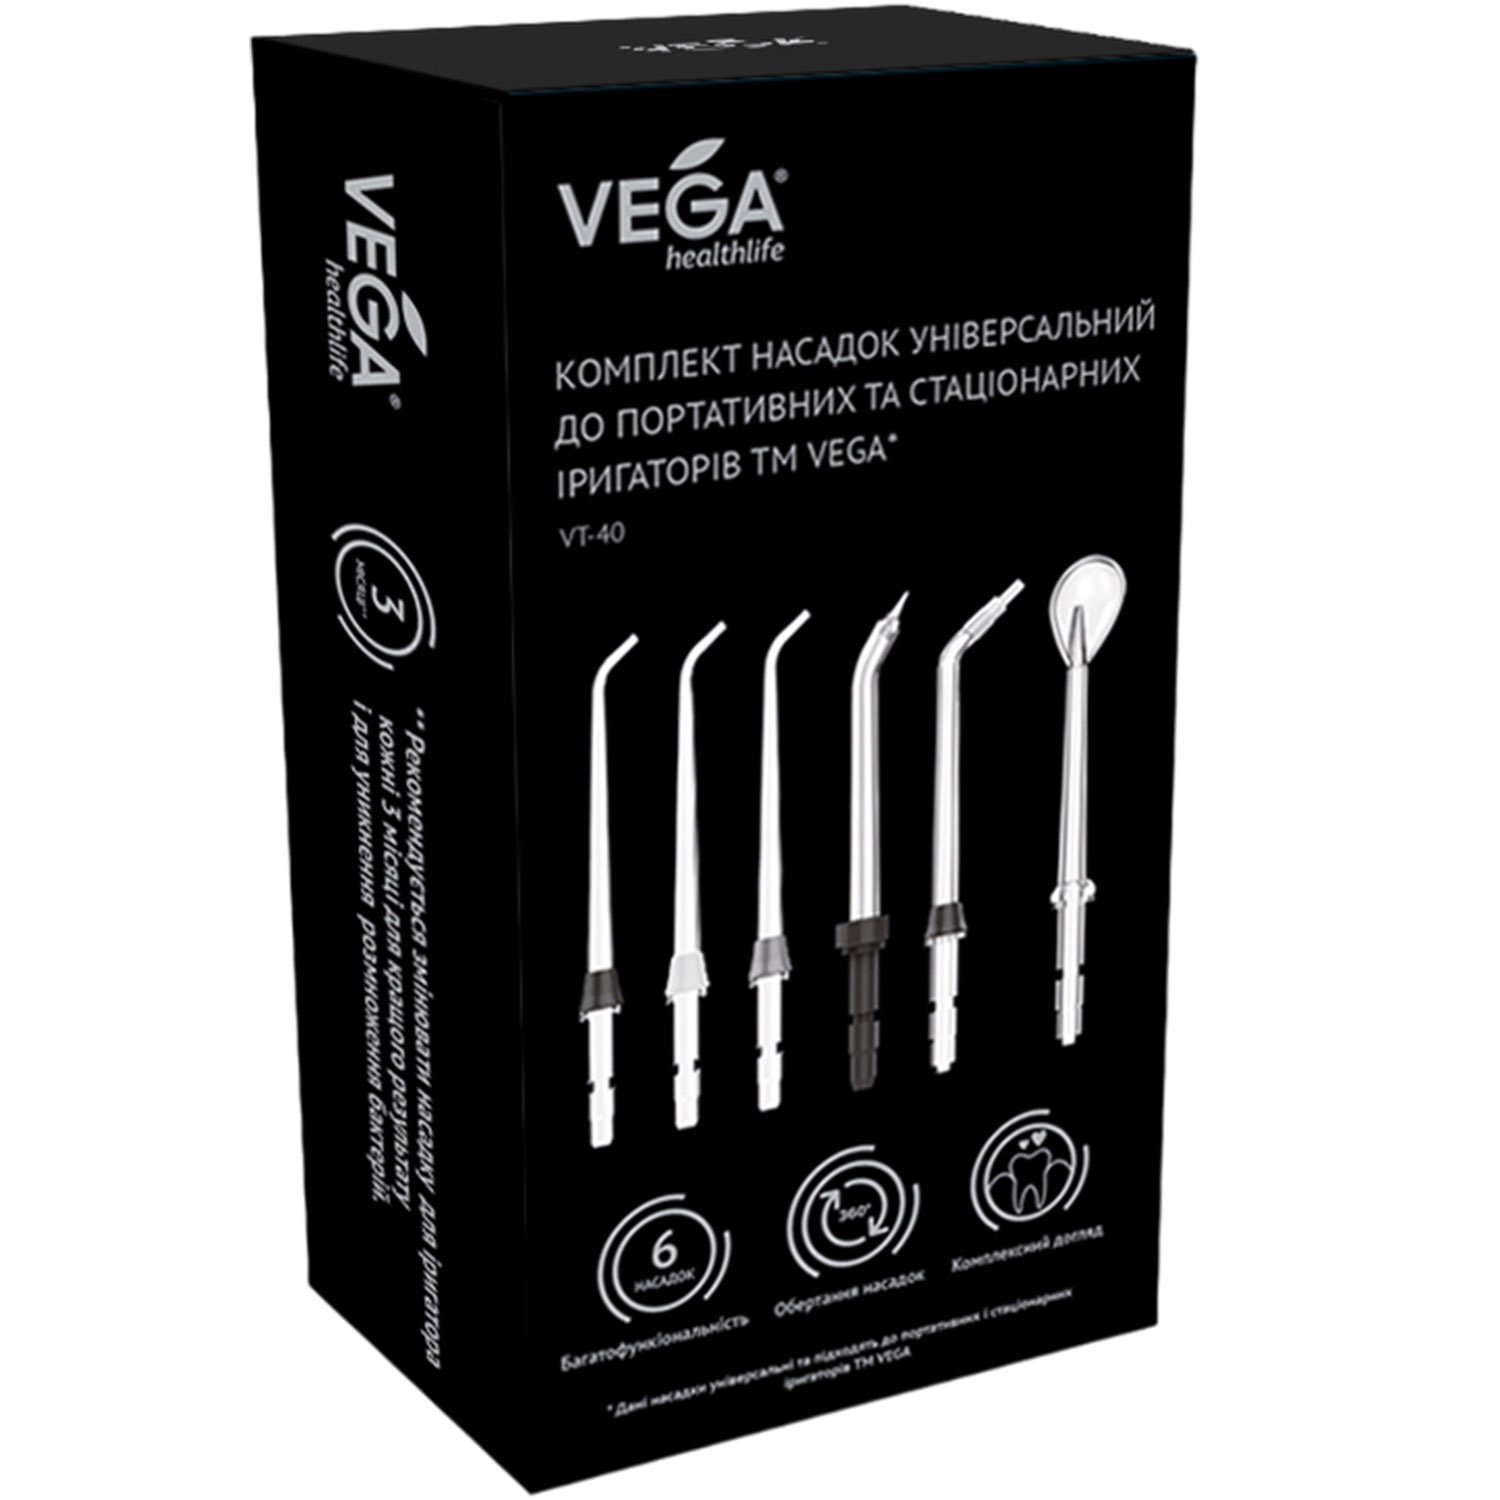 Комплект насадок Vega универсальный для портативных и стационарных ирригаторов (VT-40) - фото 3